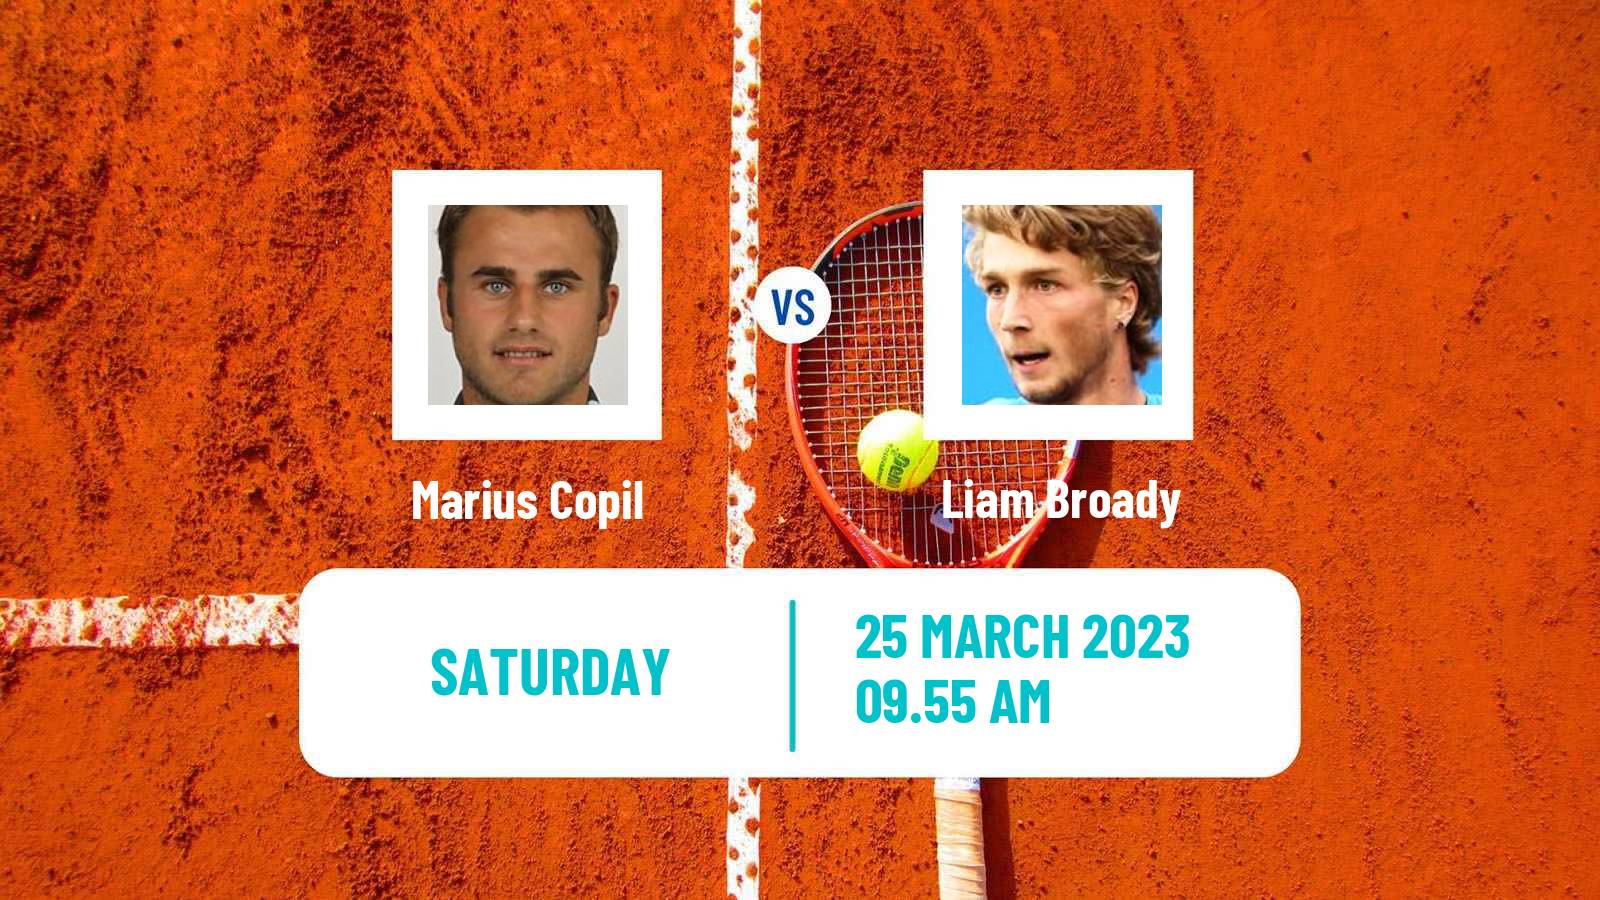 Tennis ATP Challenger Marius Copil - Liam Broady